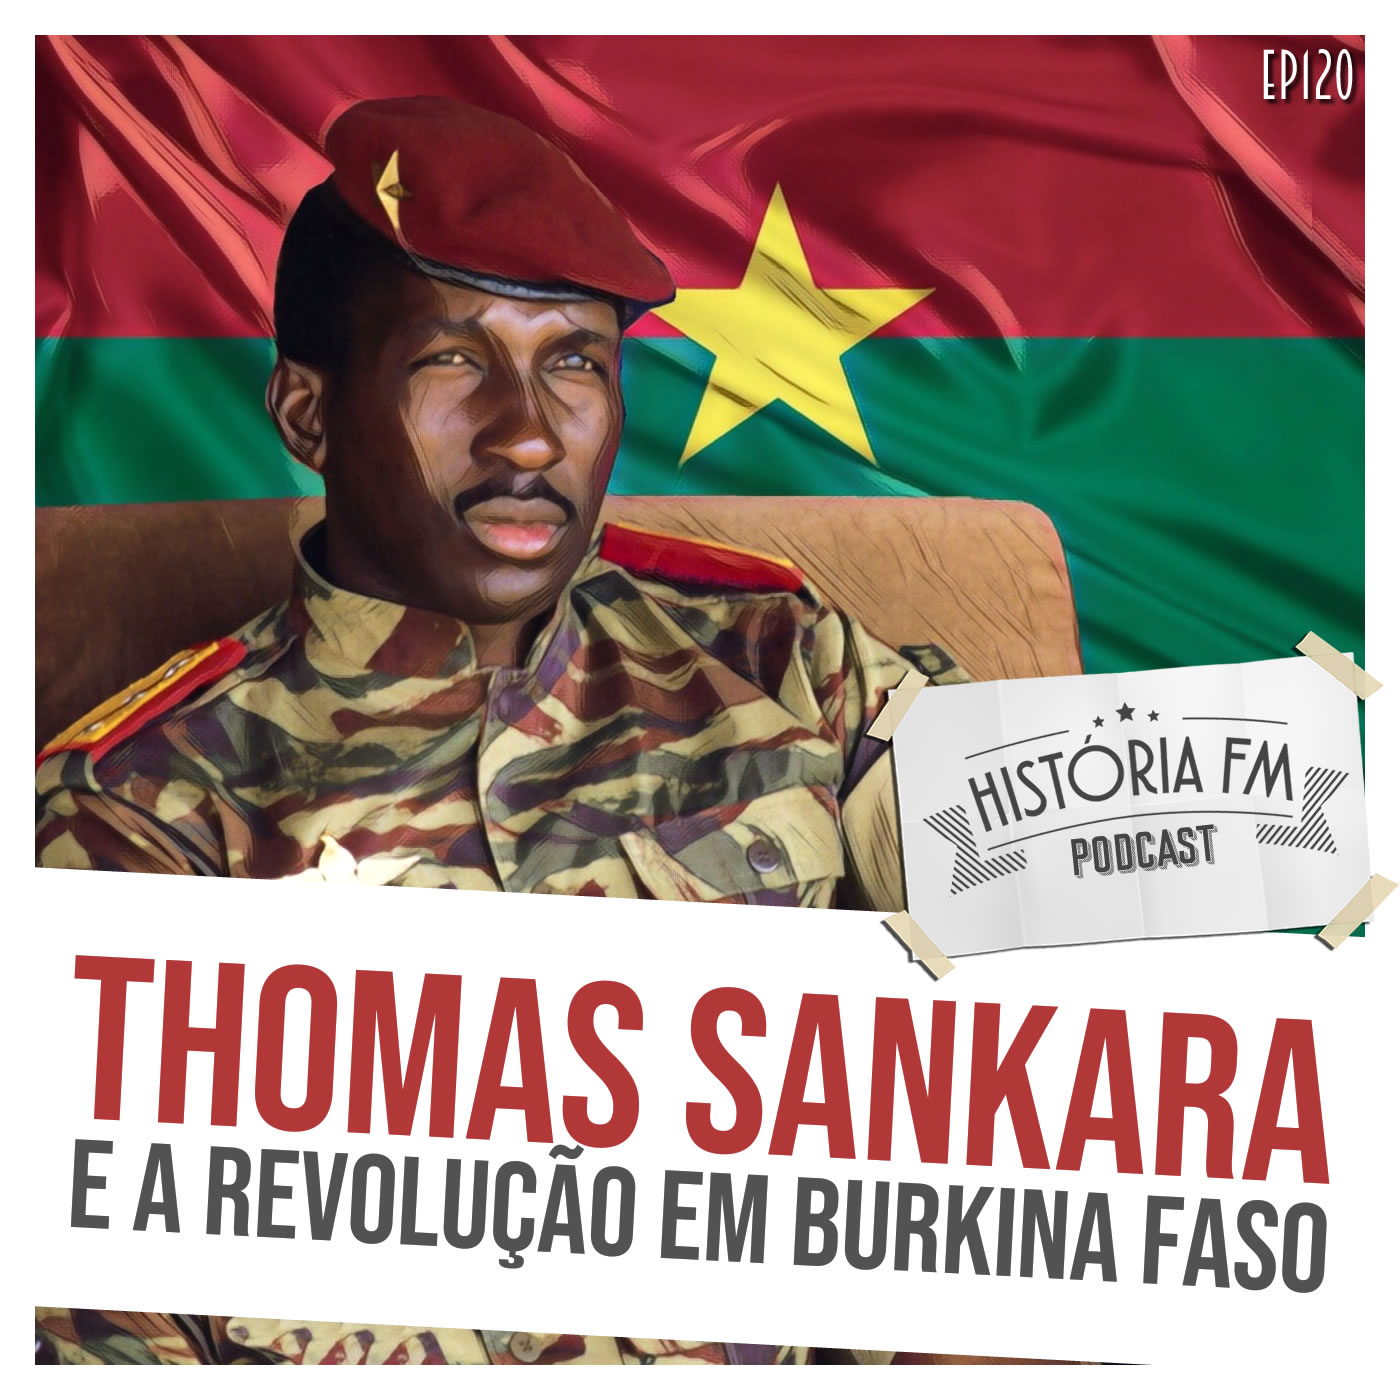 Thomas Sankara e a revolução em Burkina Faso